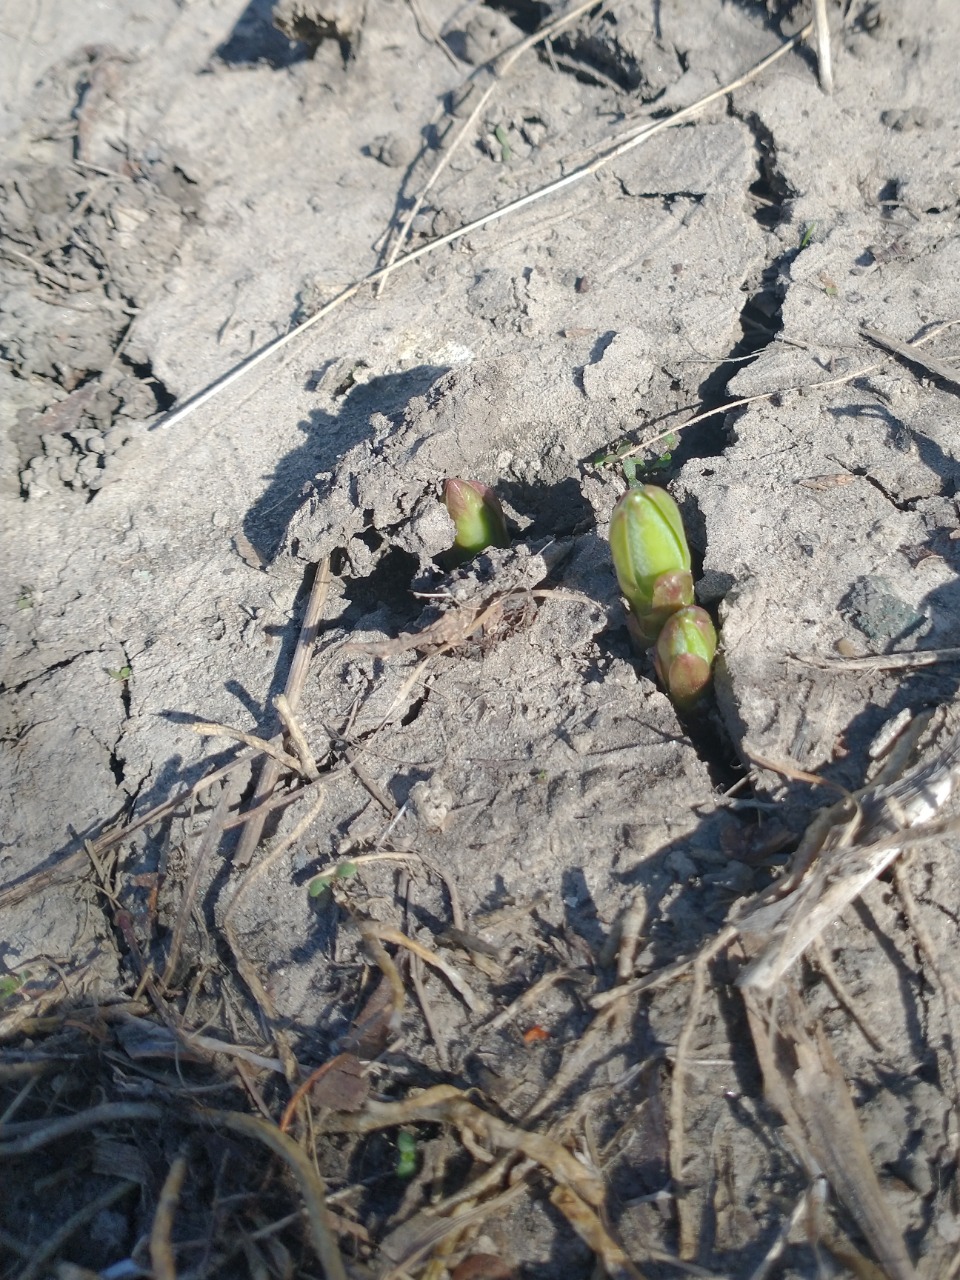 Milkweed emergence through dry ground